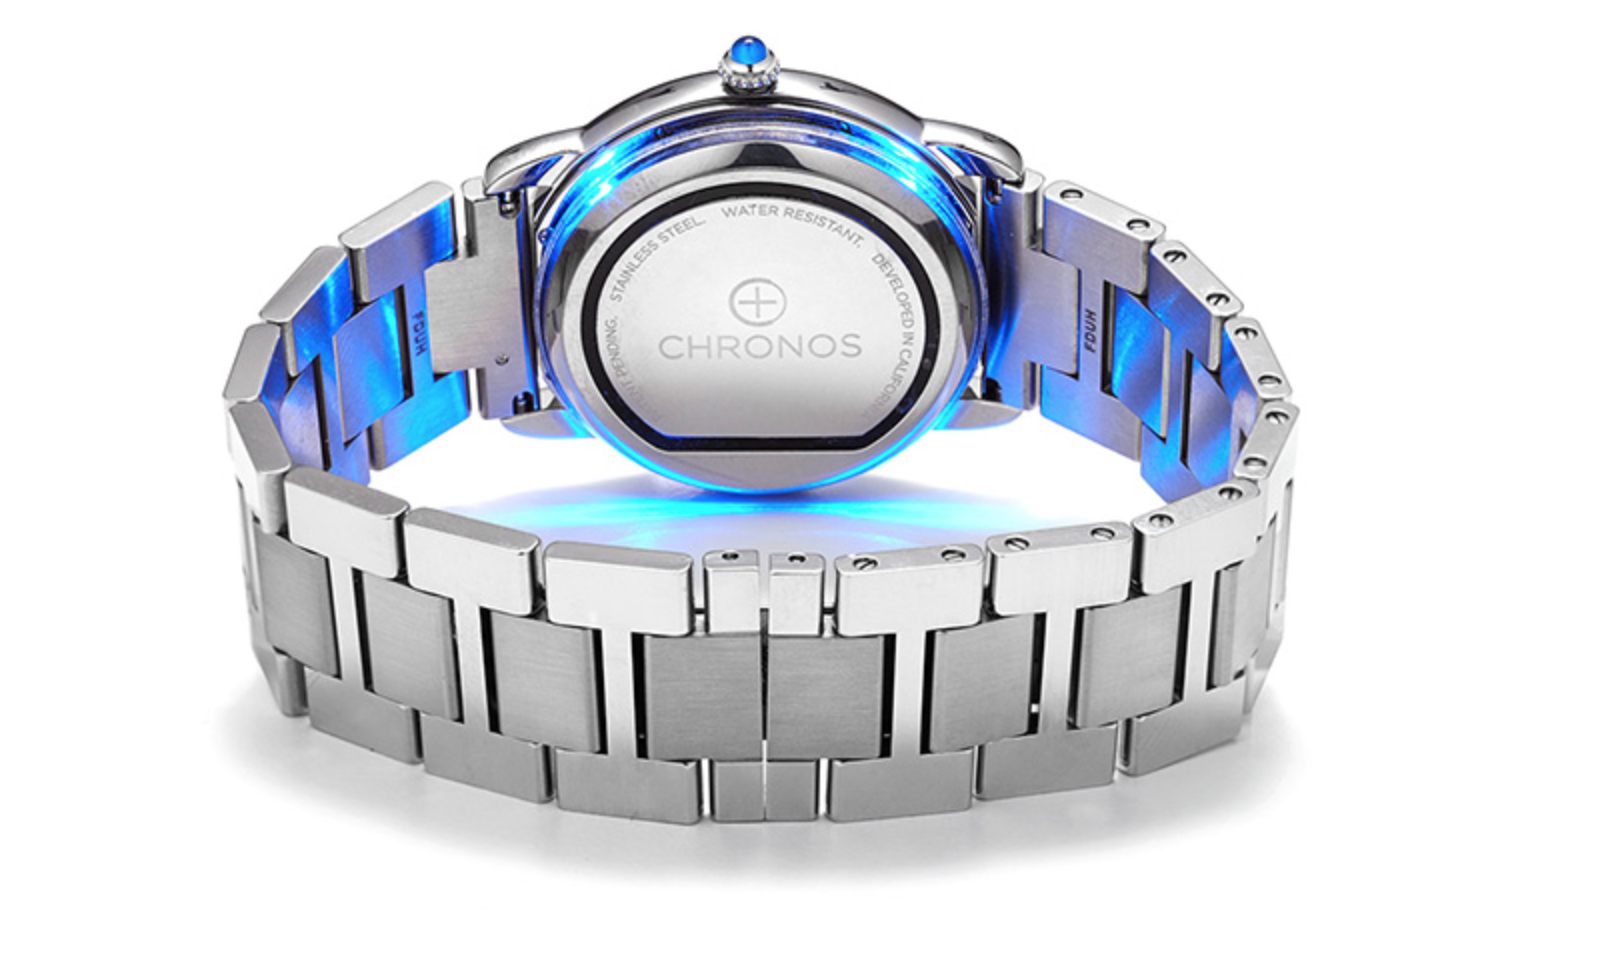 Chronos ser ut som en veldig god ide for de som elsker tradisjonelle klokker, men som ønsker å få den på nett.